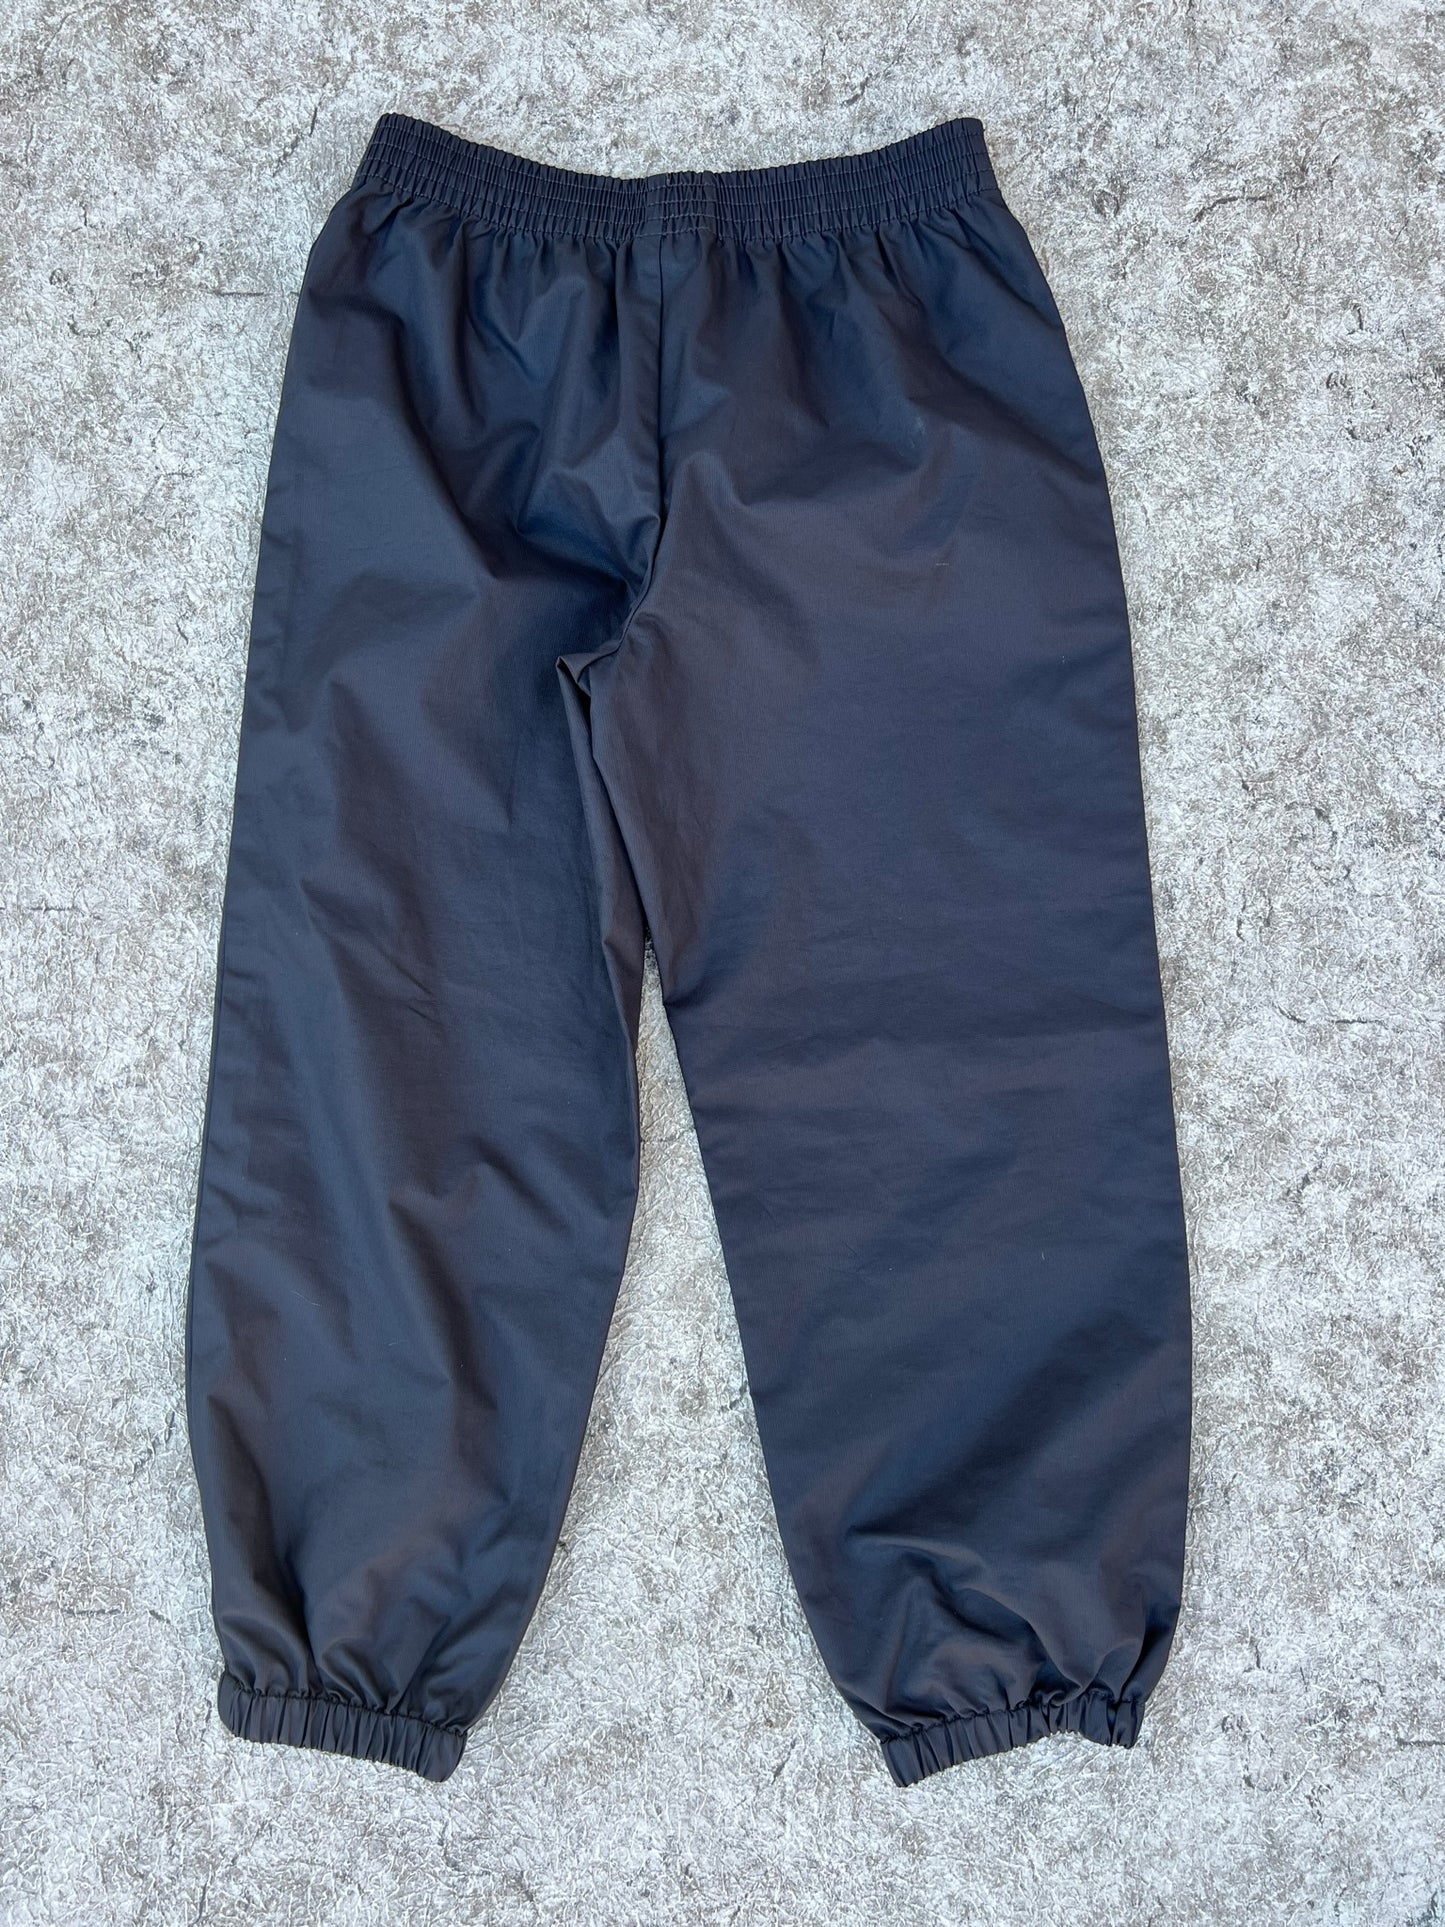 Rain Pants Child Size 6-7 Black Excellent